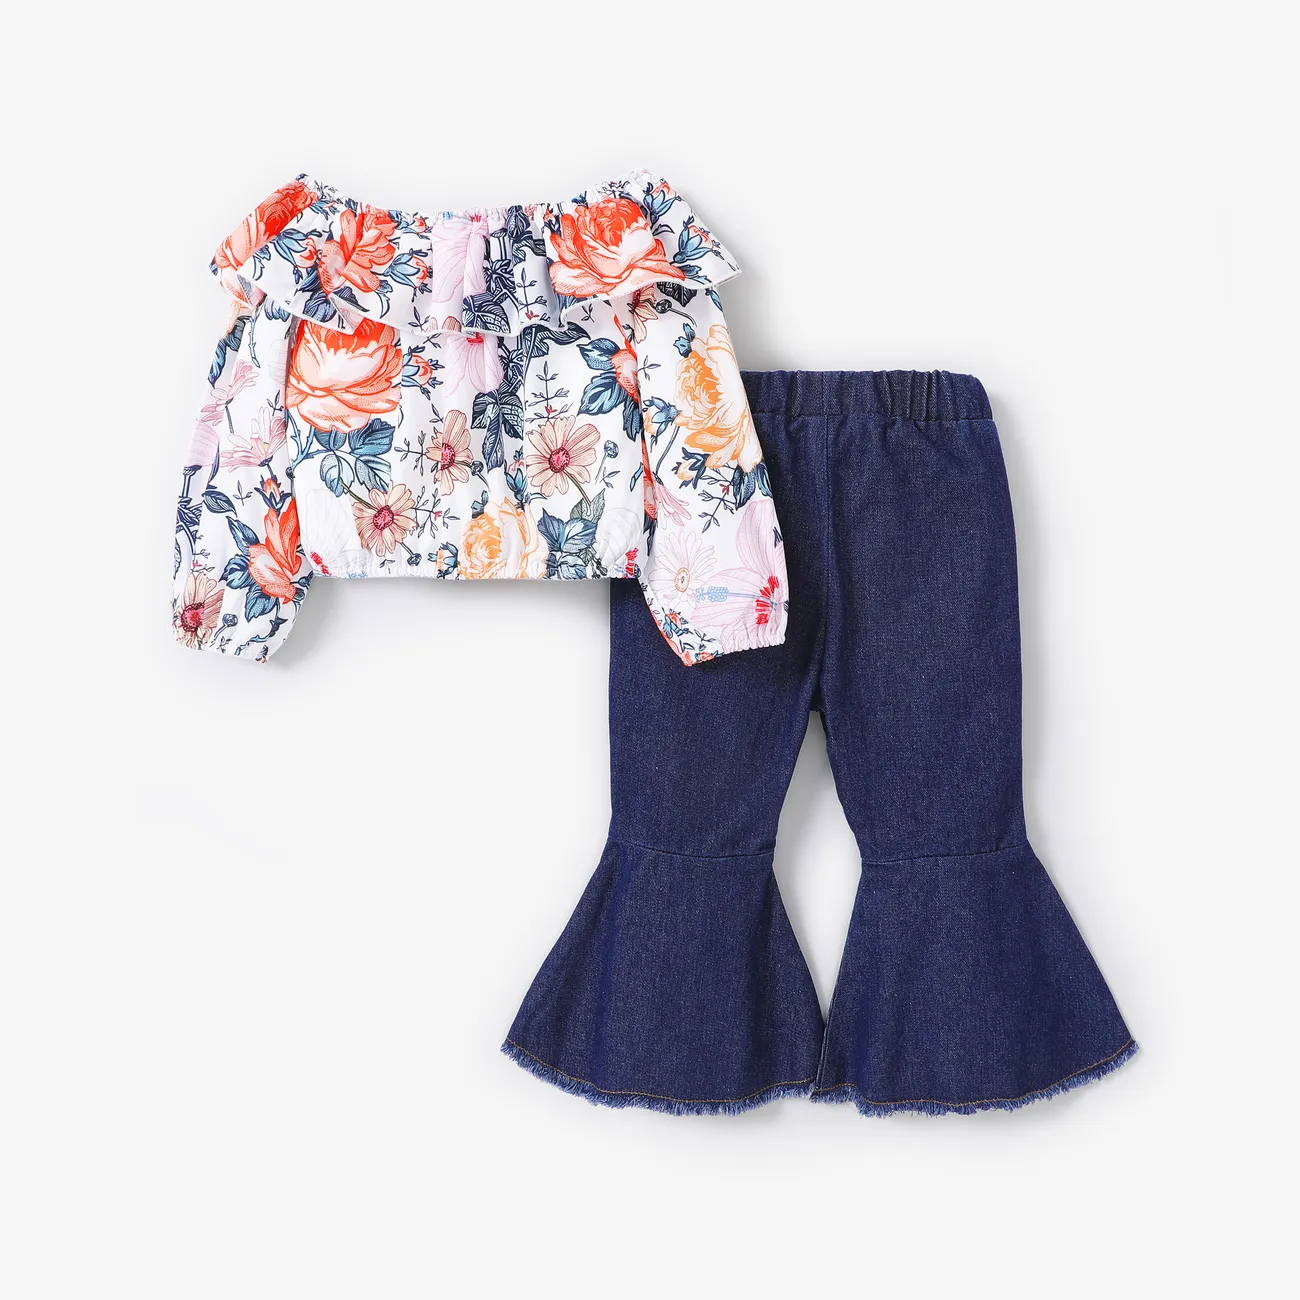 2pcs Toddler Girl Big Floral Pattern Off-Shoulder Top and Jeans Set Multi-color big image 1